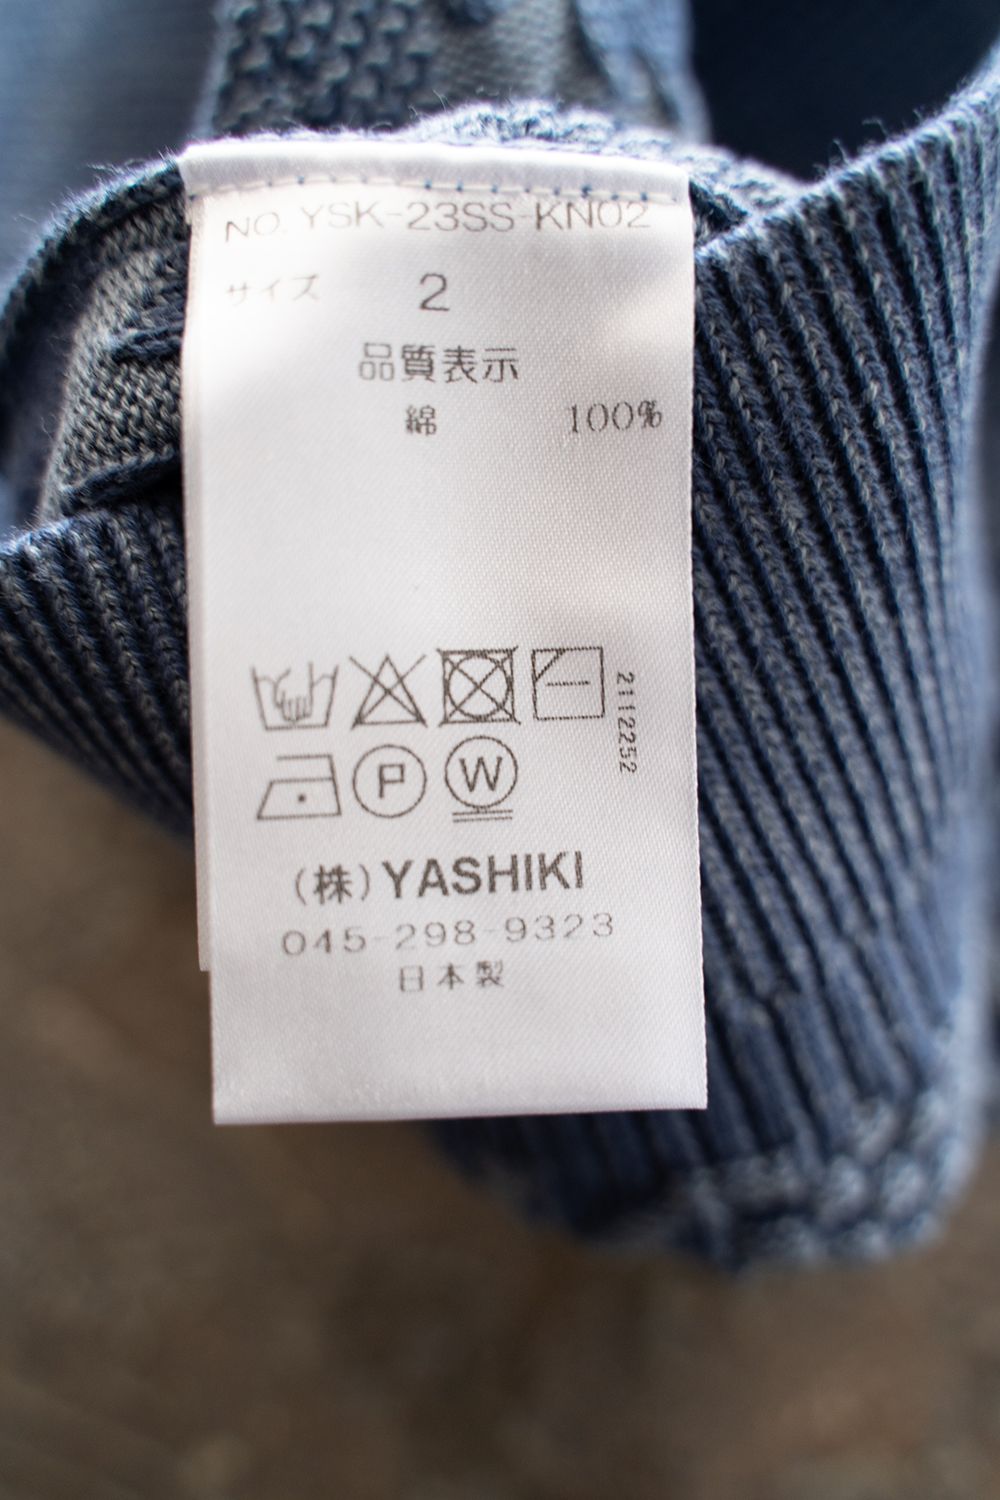 yashiki ヤシキ hanadoki knit サイズ2 ブルー - トップス